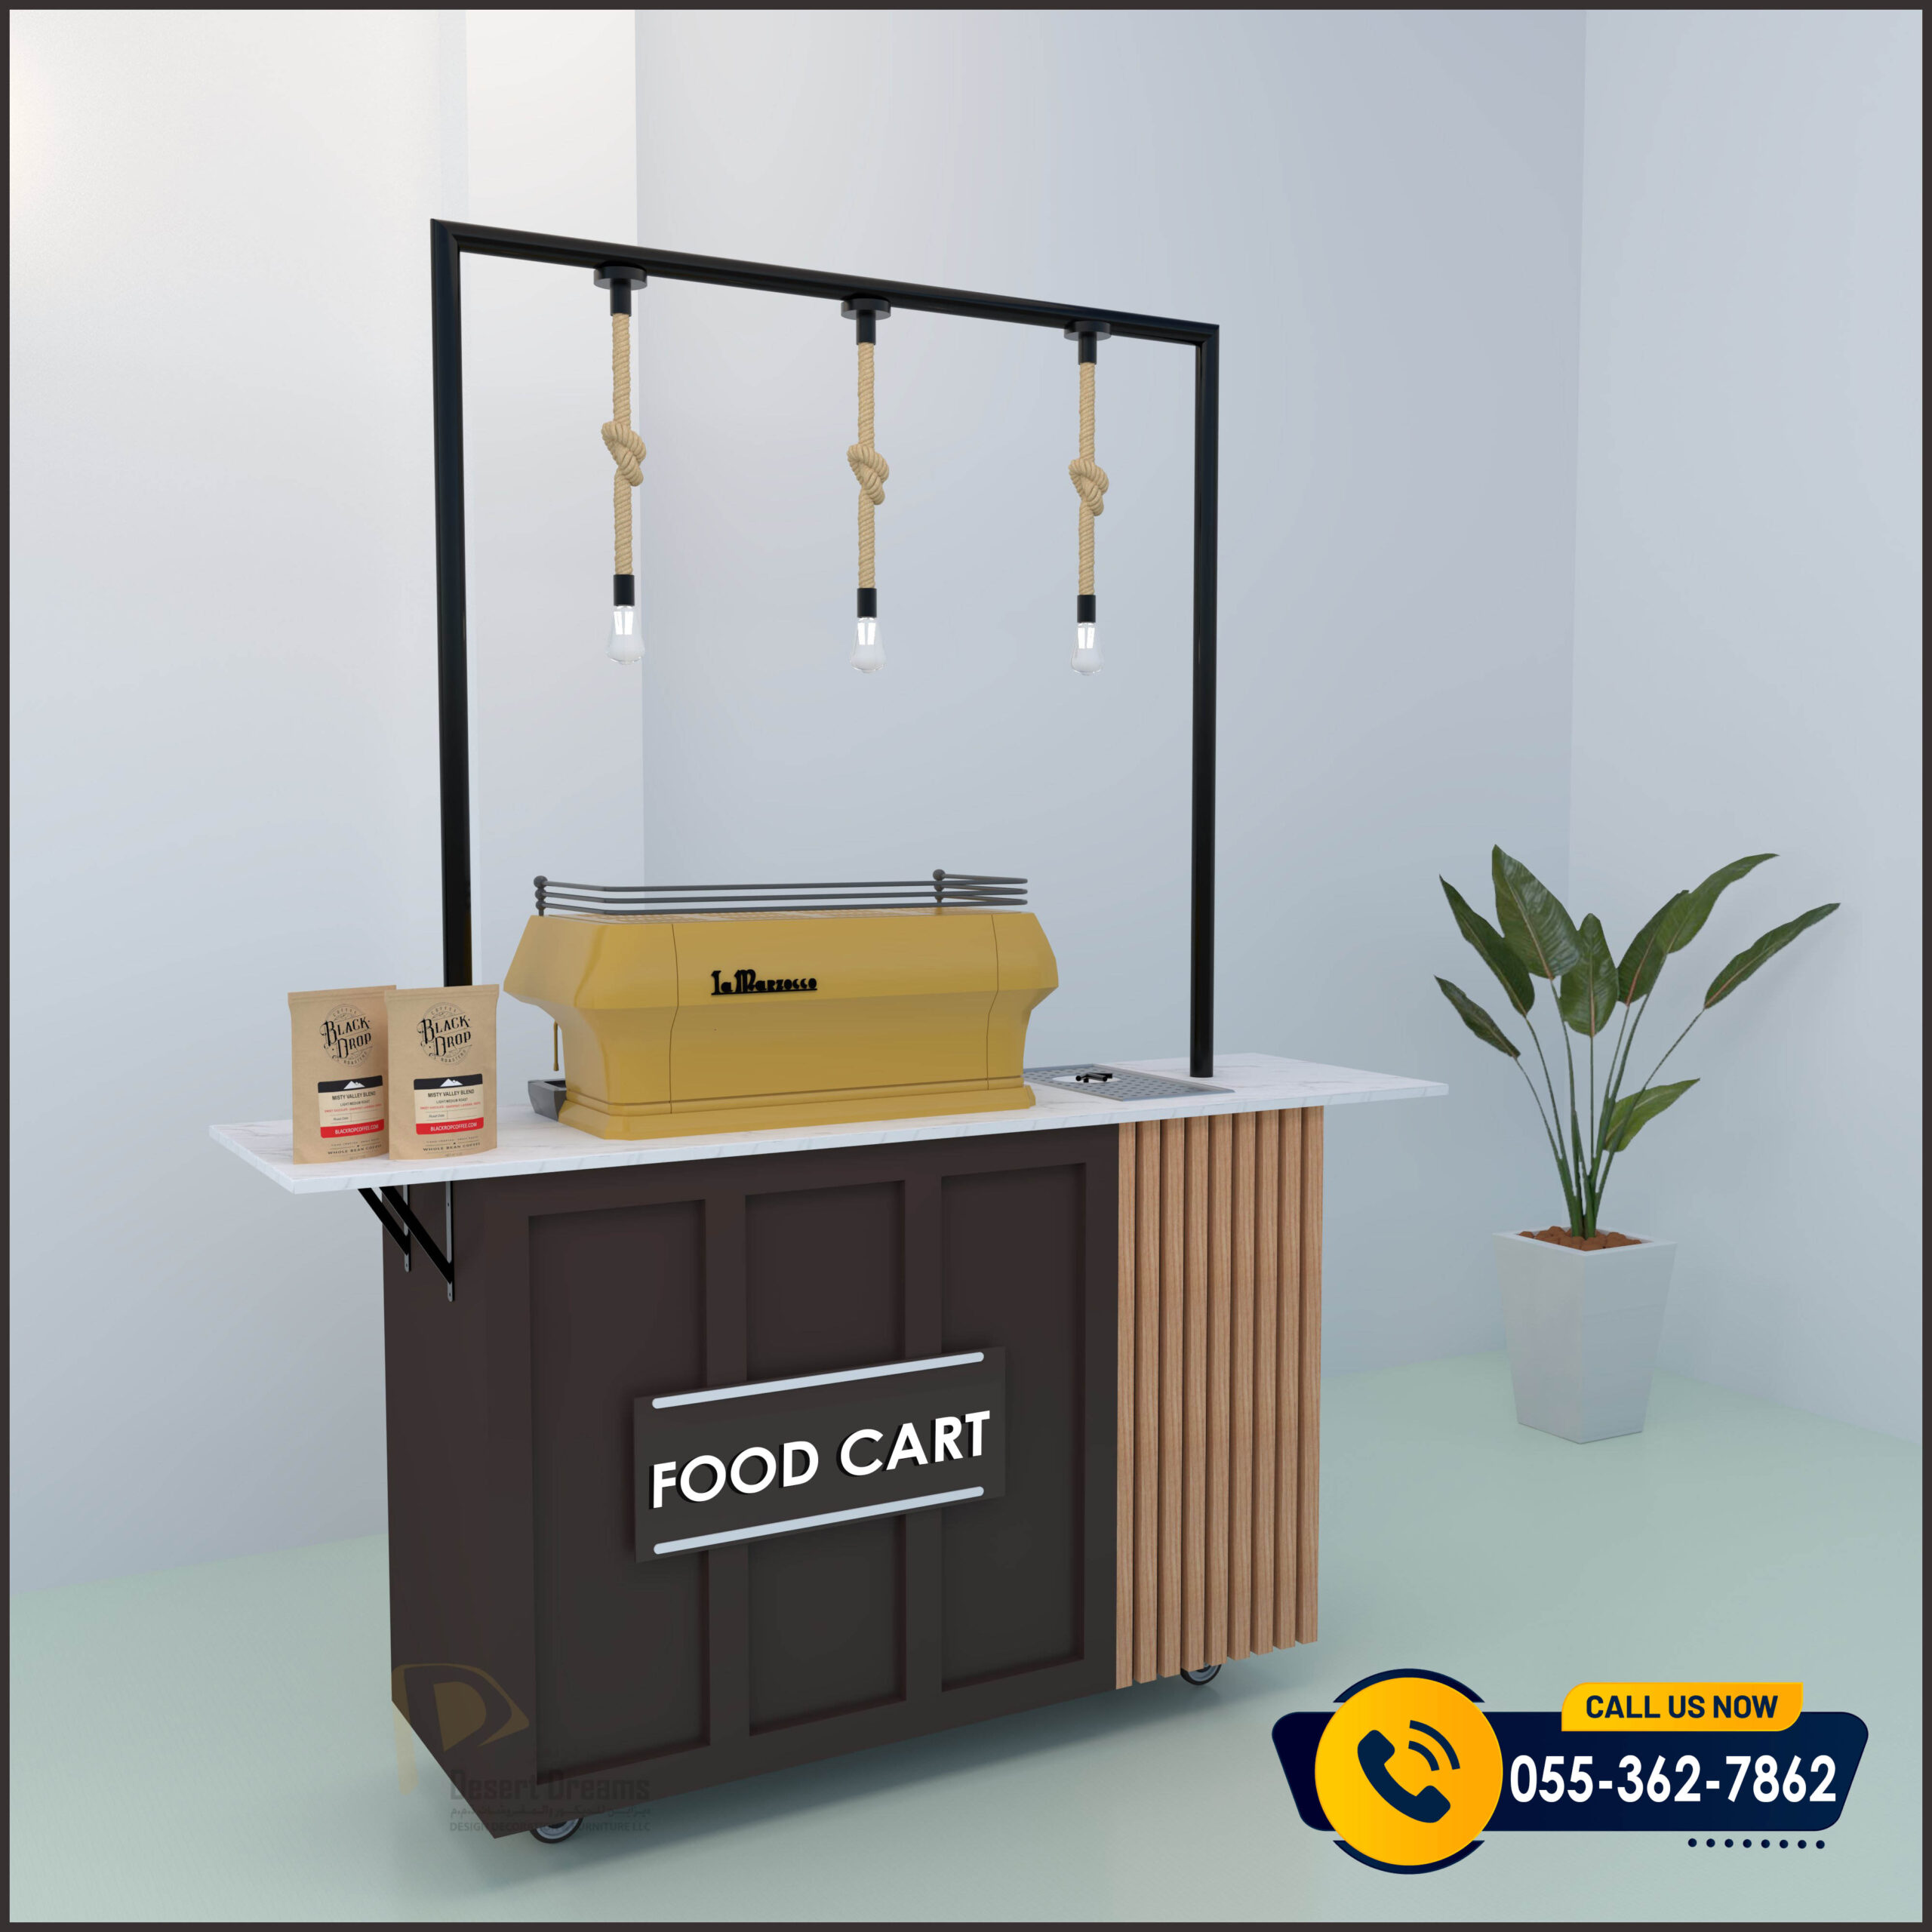 Food Cart for Rental and Selling in UAE.jpg